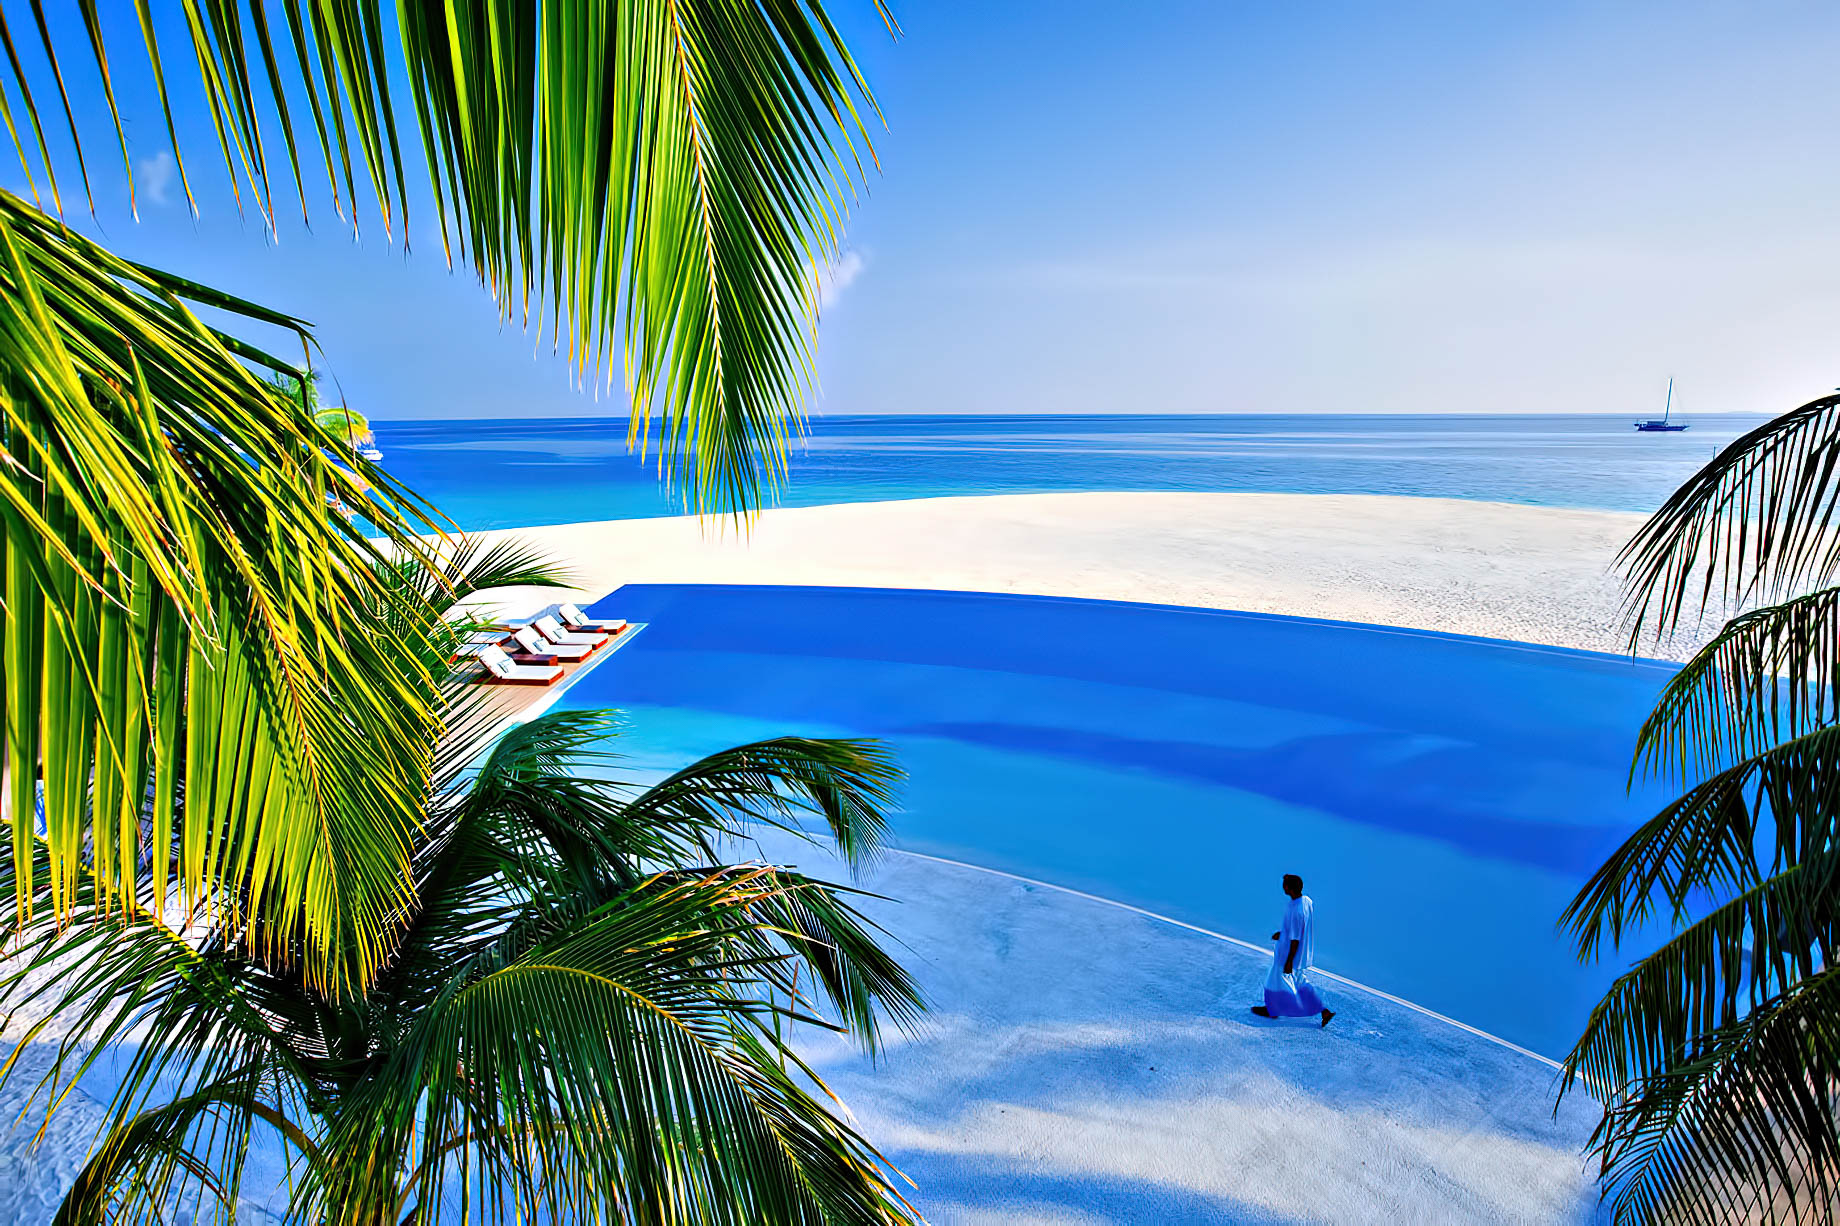 Velassaru Maldives Resort – South Male Atoll, Maldives – Infinity Pool